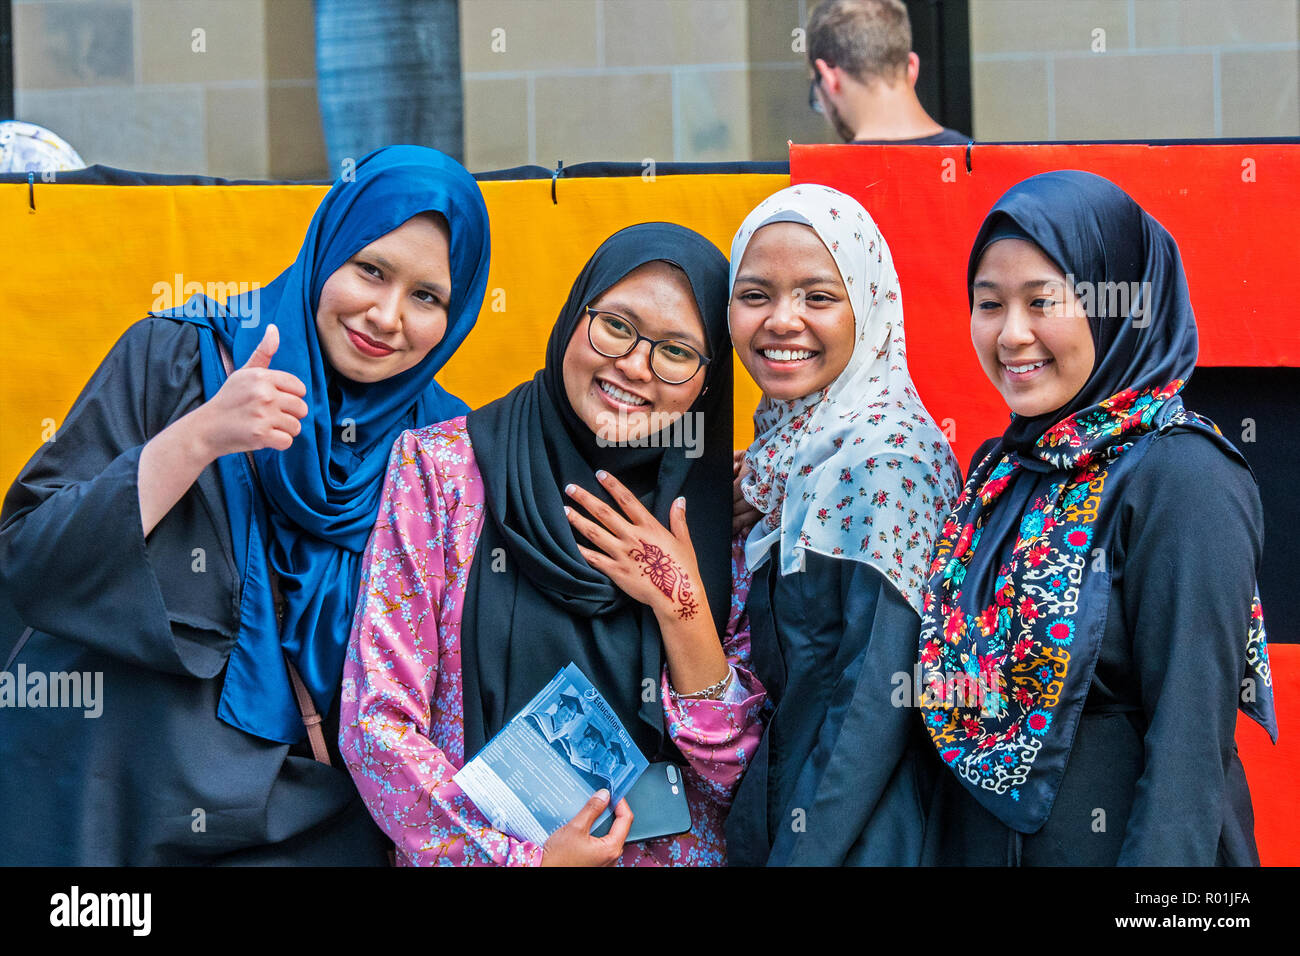 Weibliche muslimische Studenten Touristen für Fotografie Brisbane Australien posing Stockfoto